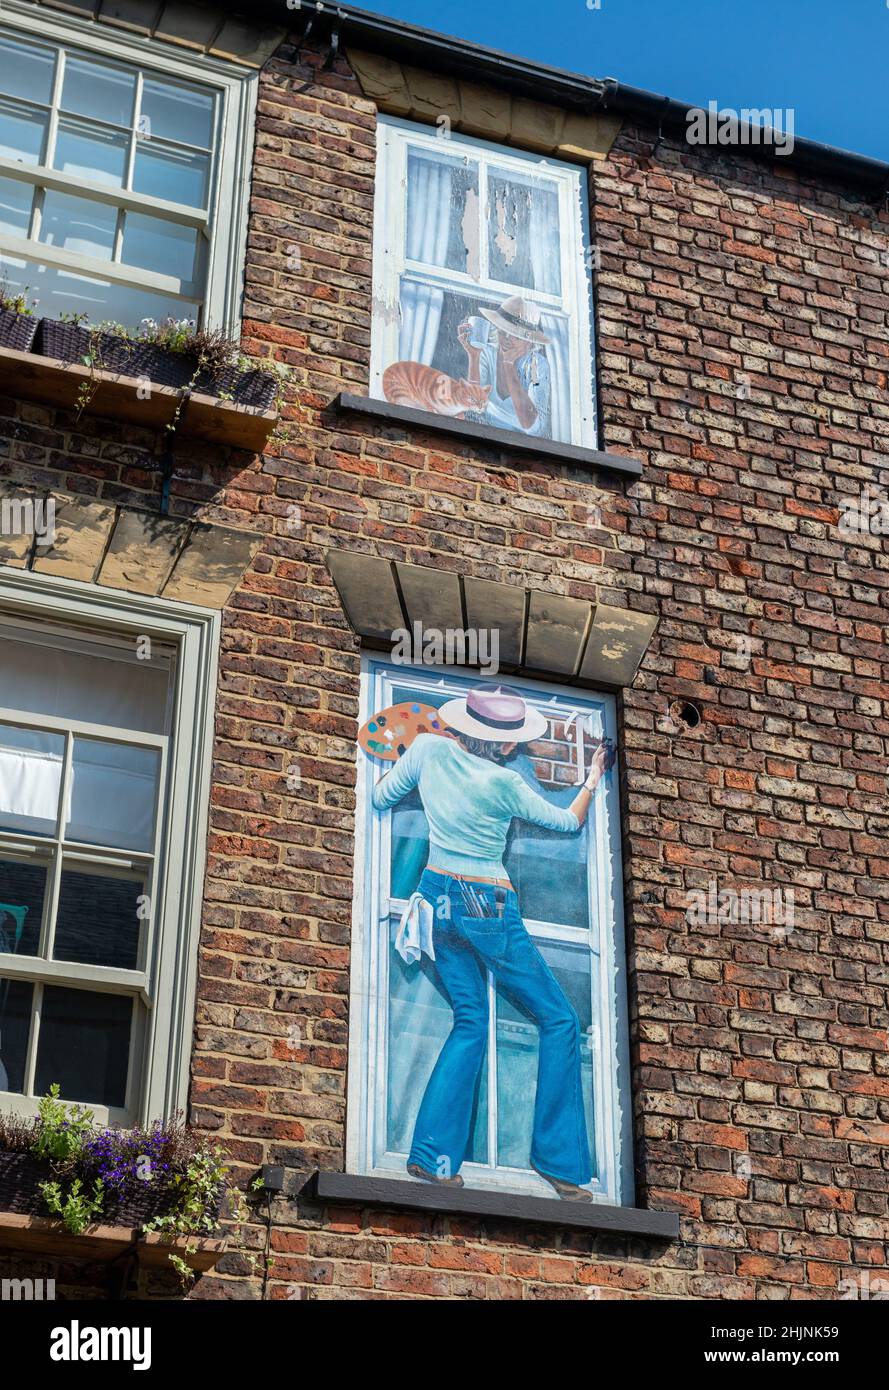 Autoportrait de l'artiste - partie du projet mural de la ville Windows trompe-l'oeil à Knaresborough, dans le Yorkshire du Nord Banque D'Images